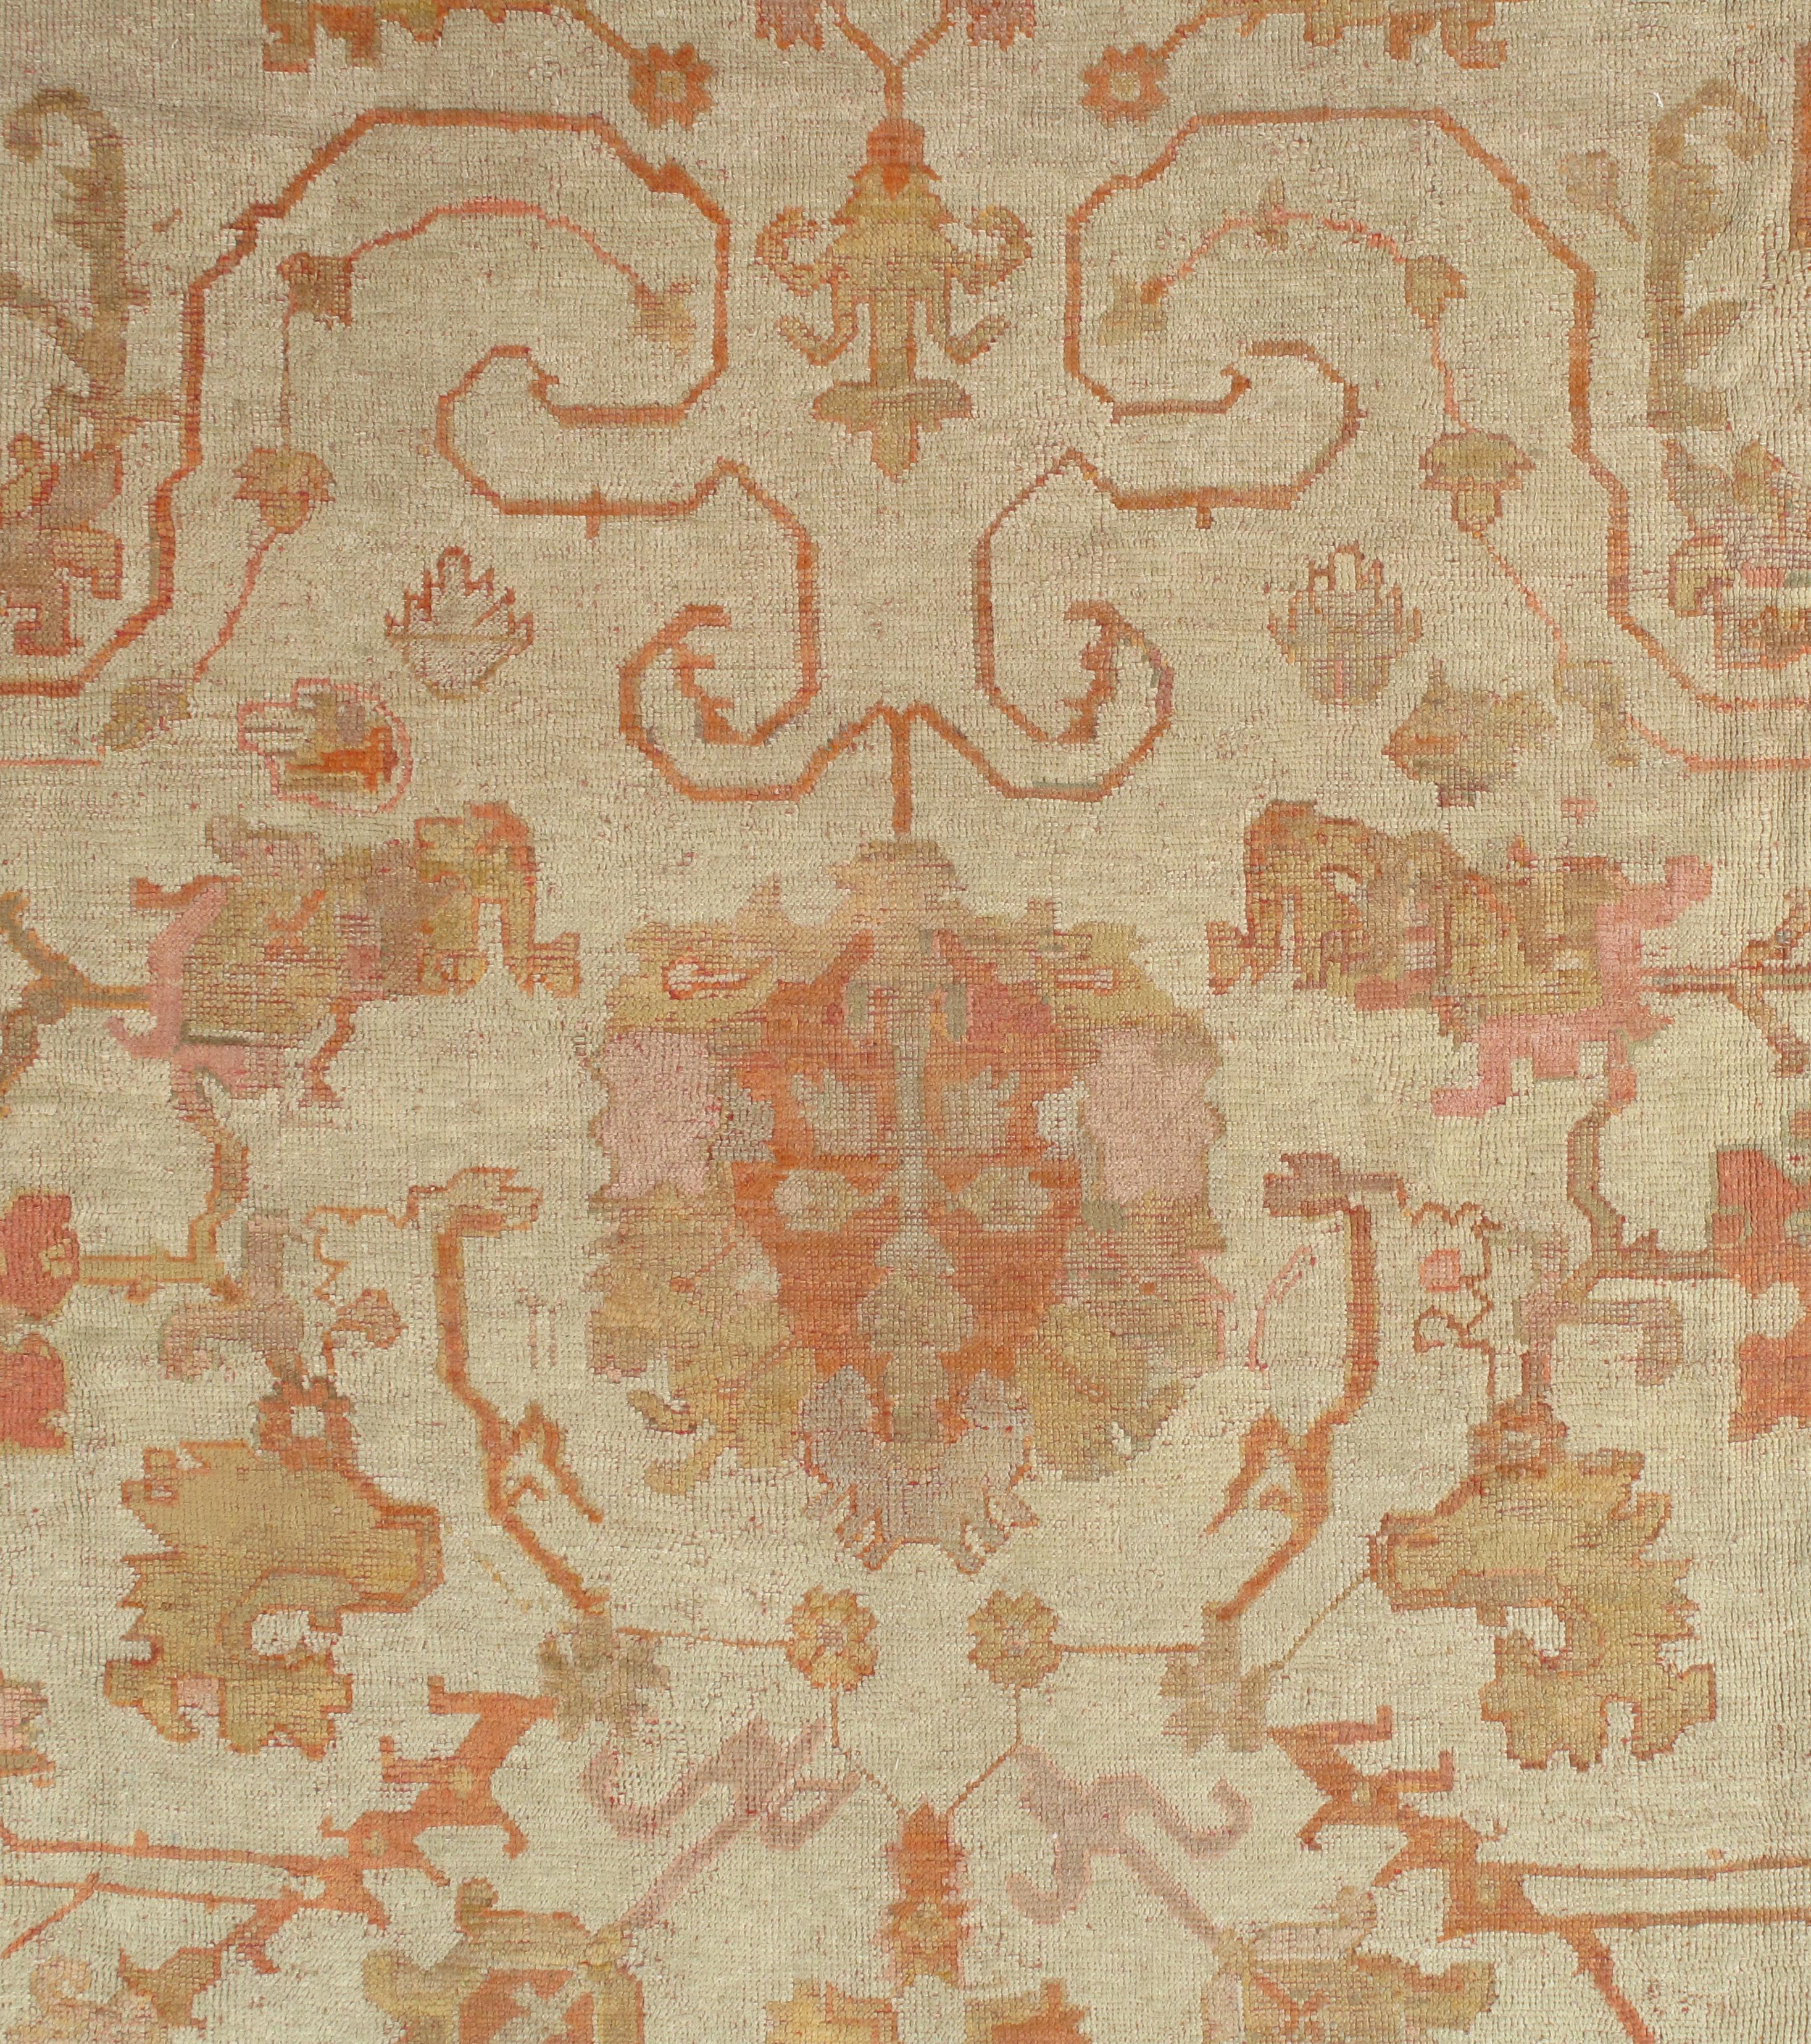 Antique Turkish Oushak Carpet, Handmade Oriental Rug, Beige, Taupe, Shrimp Coral For Sale 8